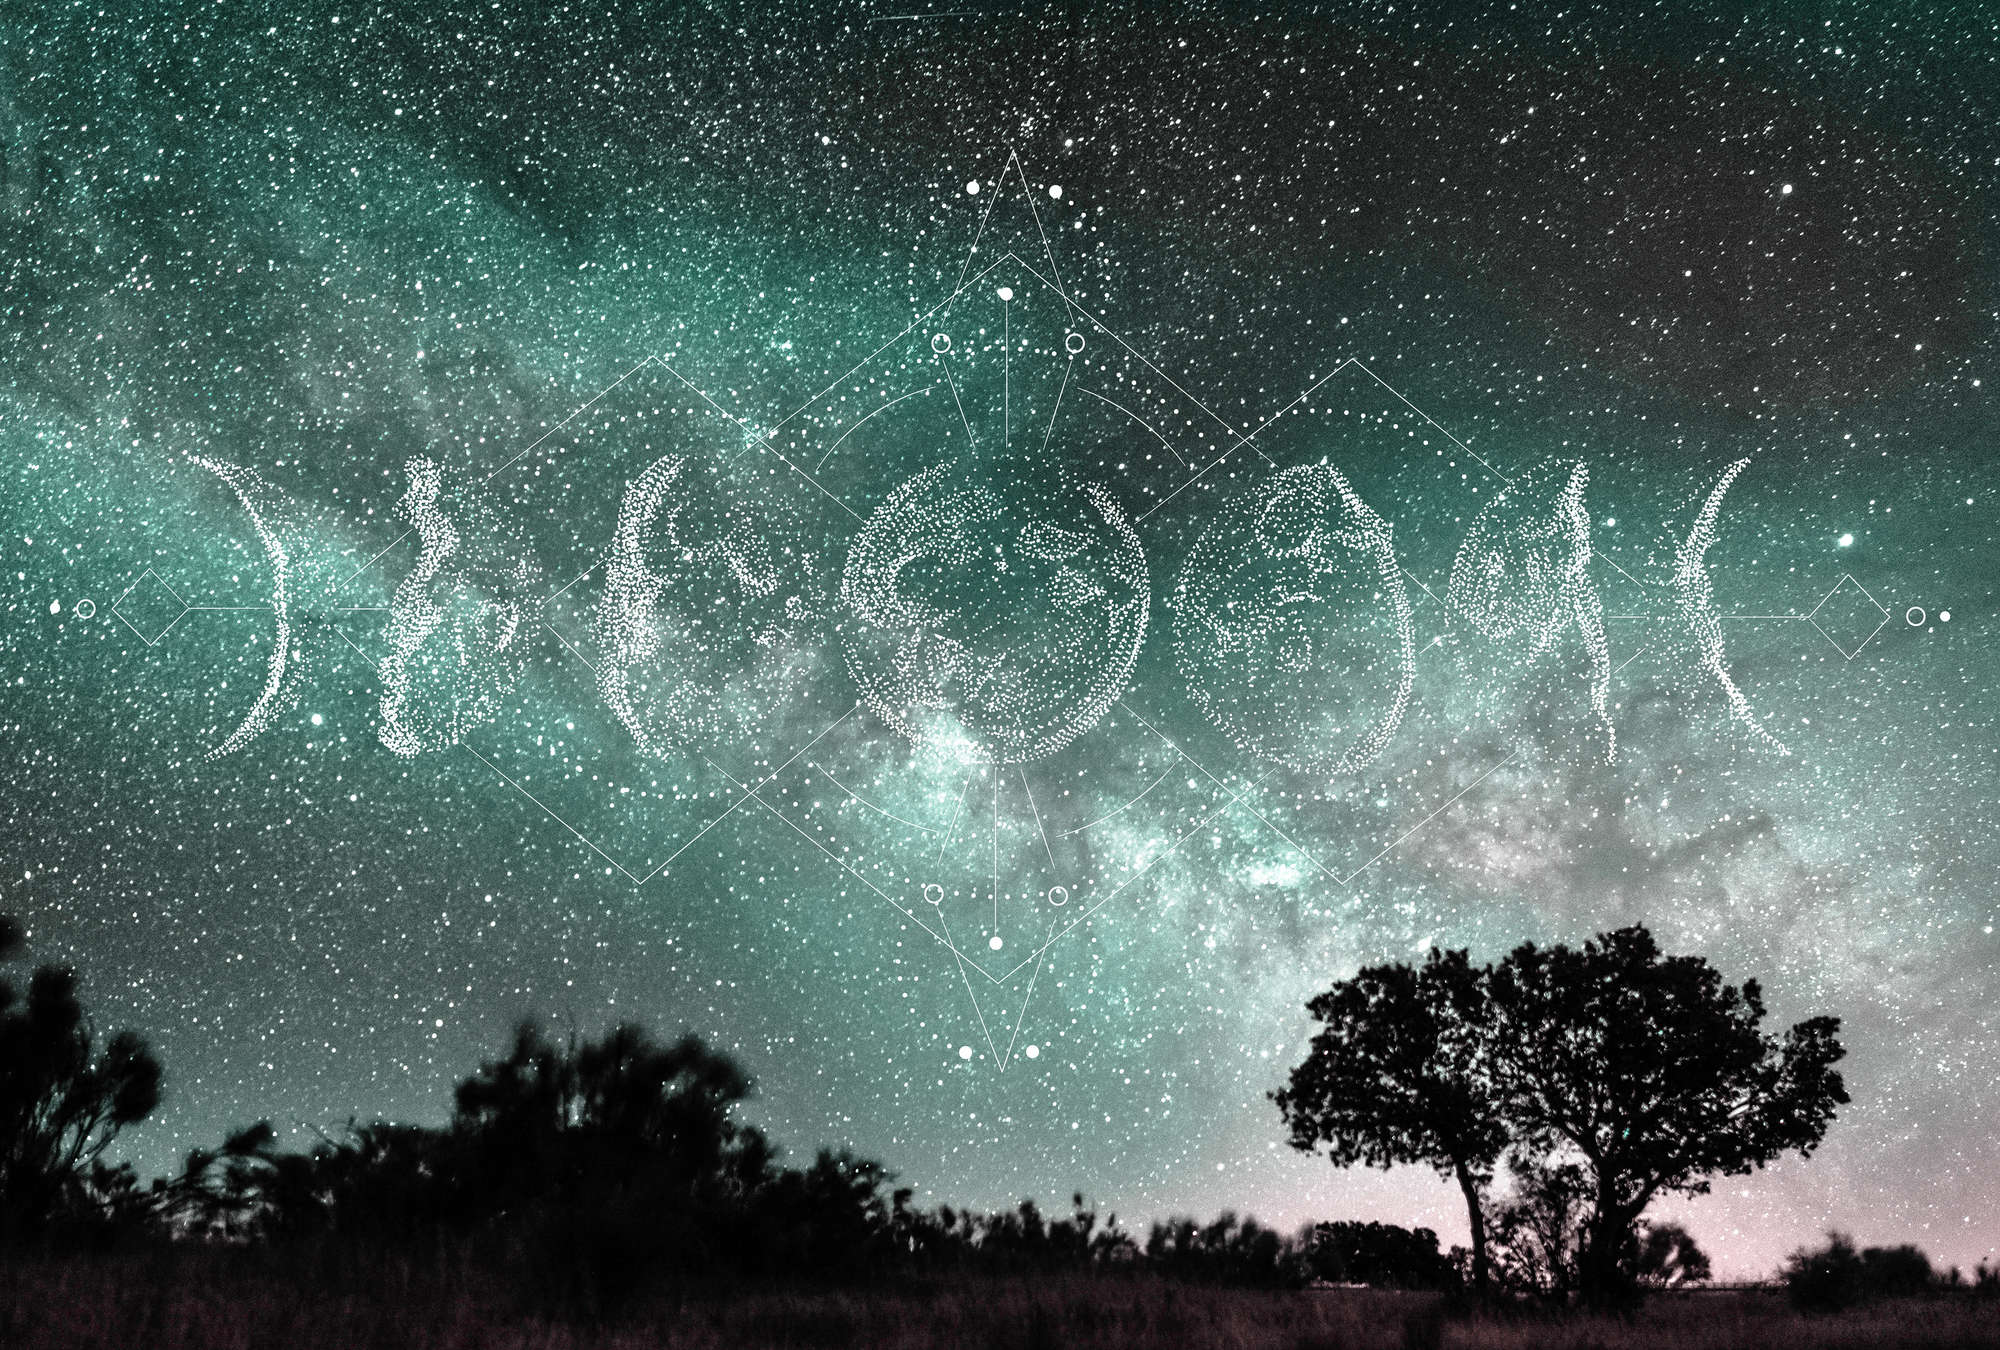             Boho Fototapete Nachthimmel, Sterne & Mondphasen – Grün, Blau, Weiß
        